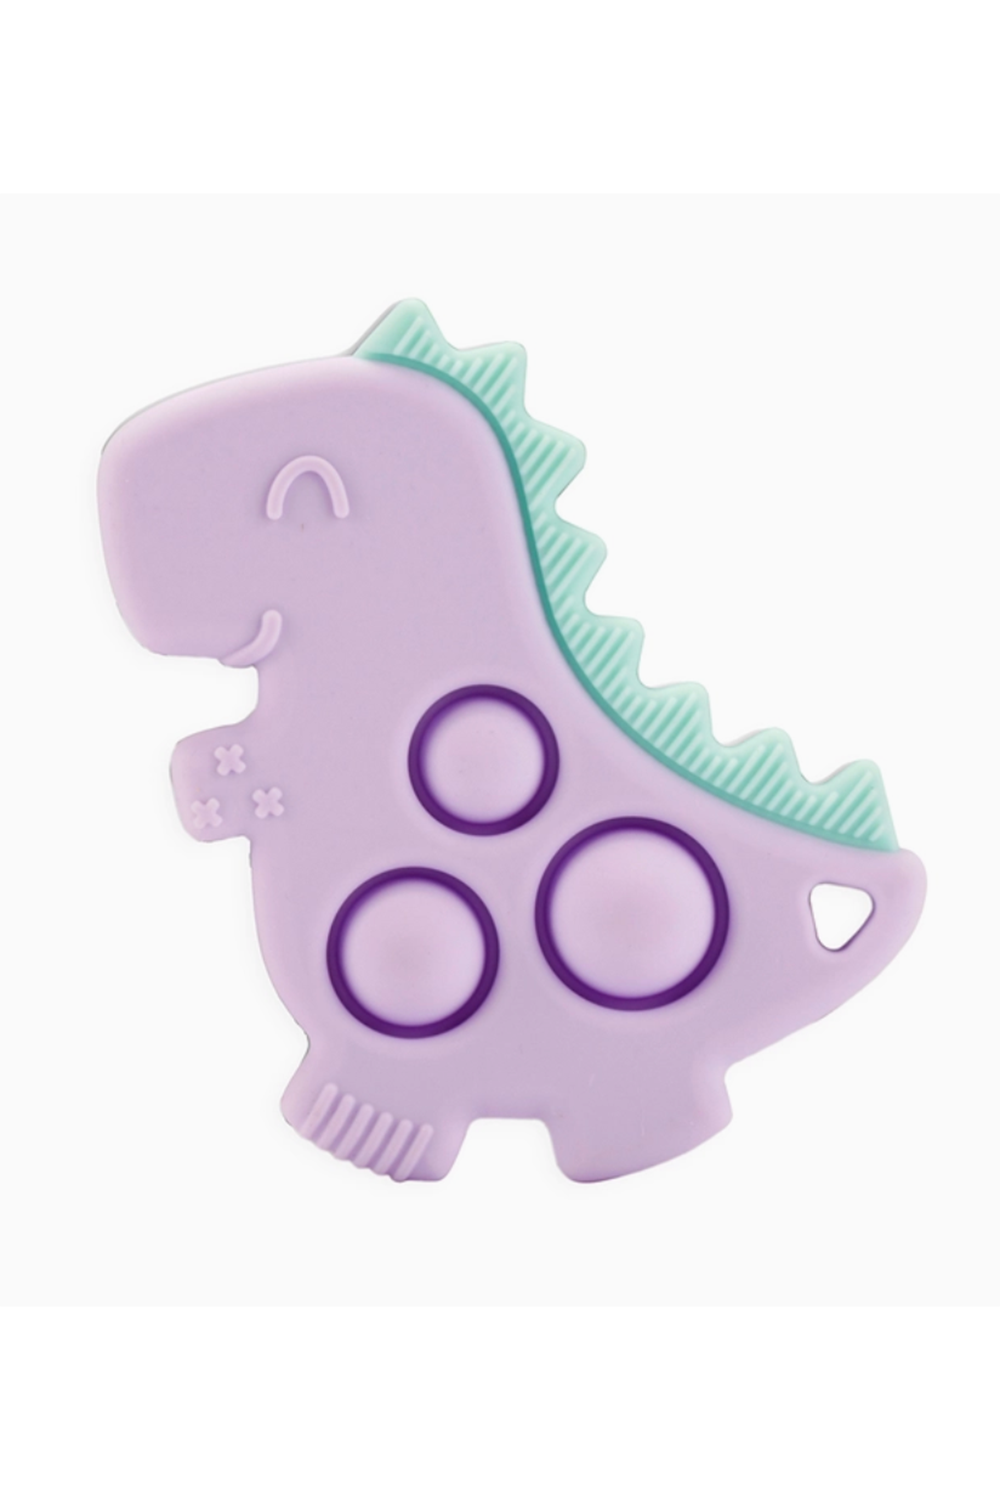 Itzy Pop Toy - Lilac Dino